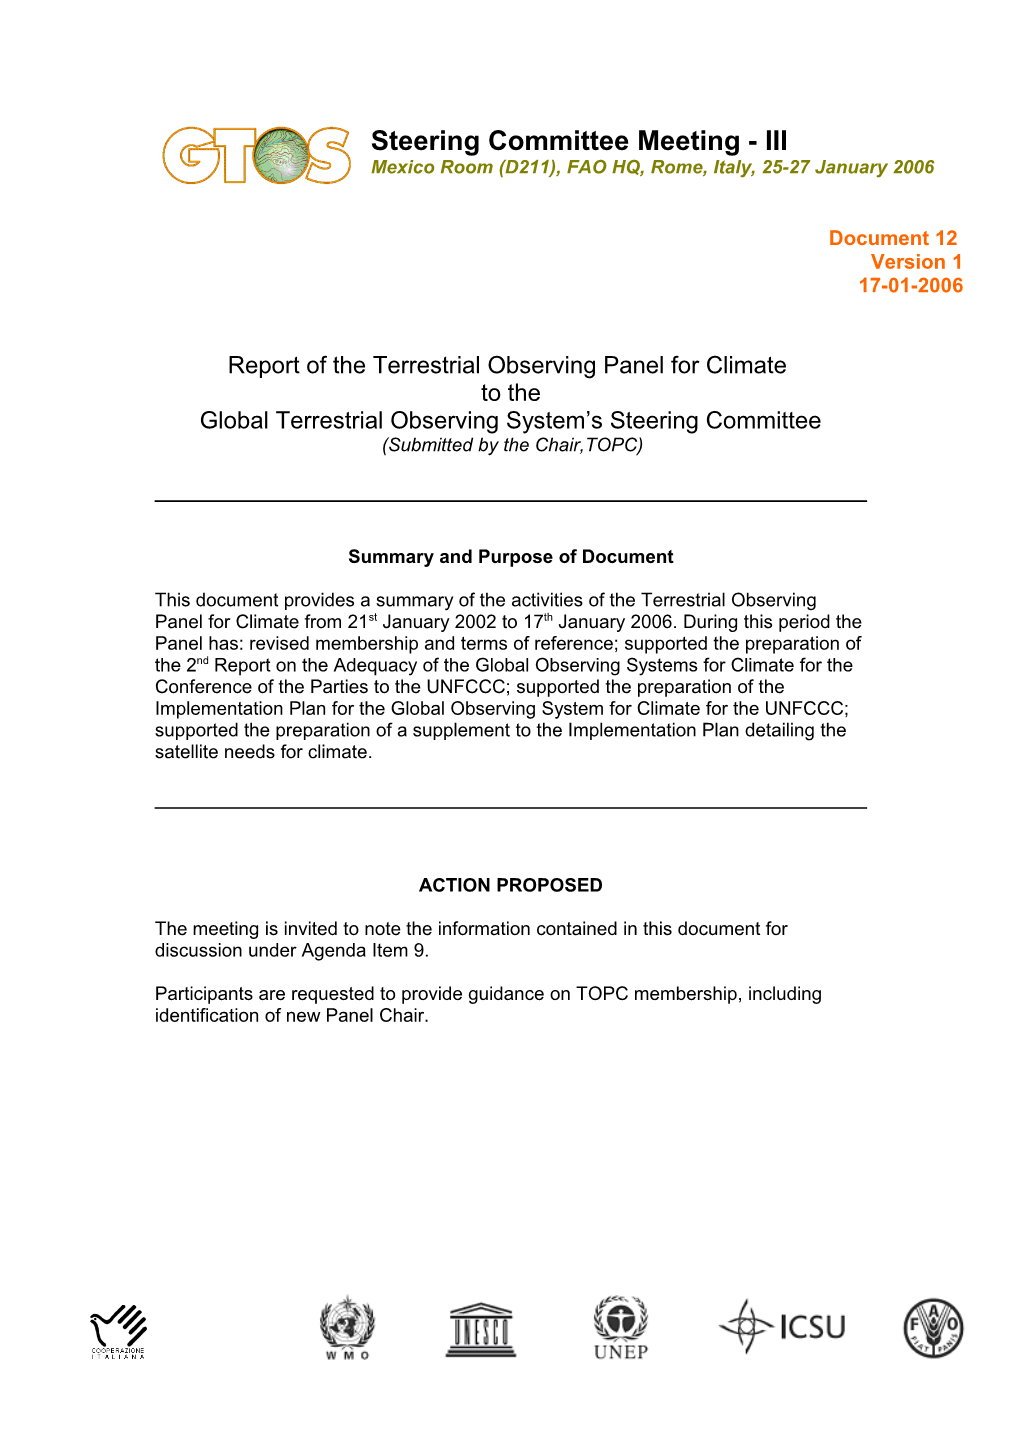 Director's Report to GCOS Steering Committee